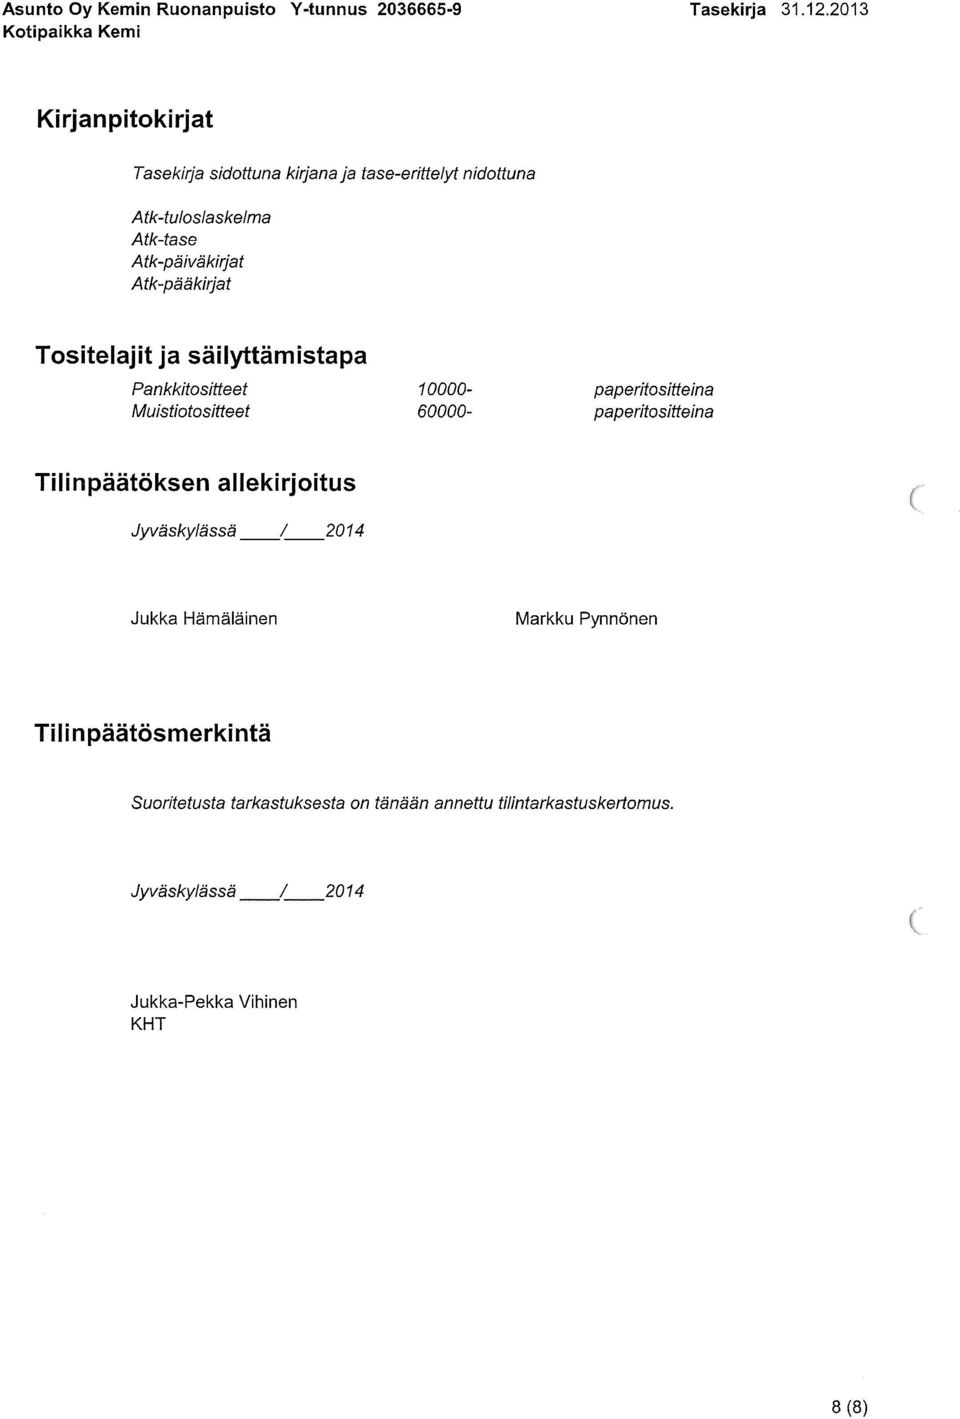 paperitositteina Tilinpäätöksen allekirjoitus Jyväskylässä /2014 Jukka Hämäläinen Markku Pynnönen Tili n